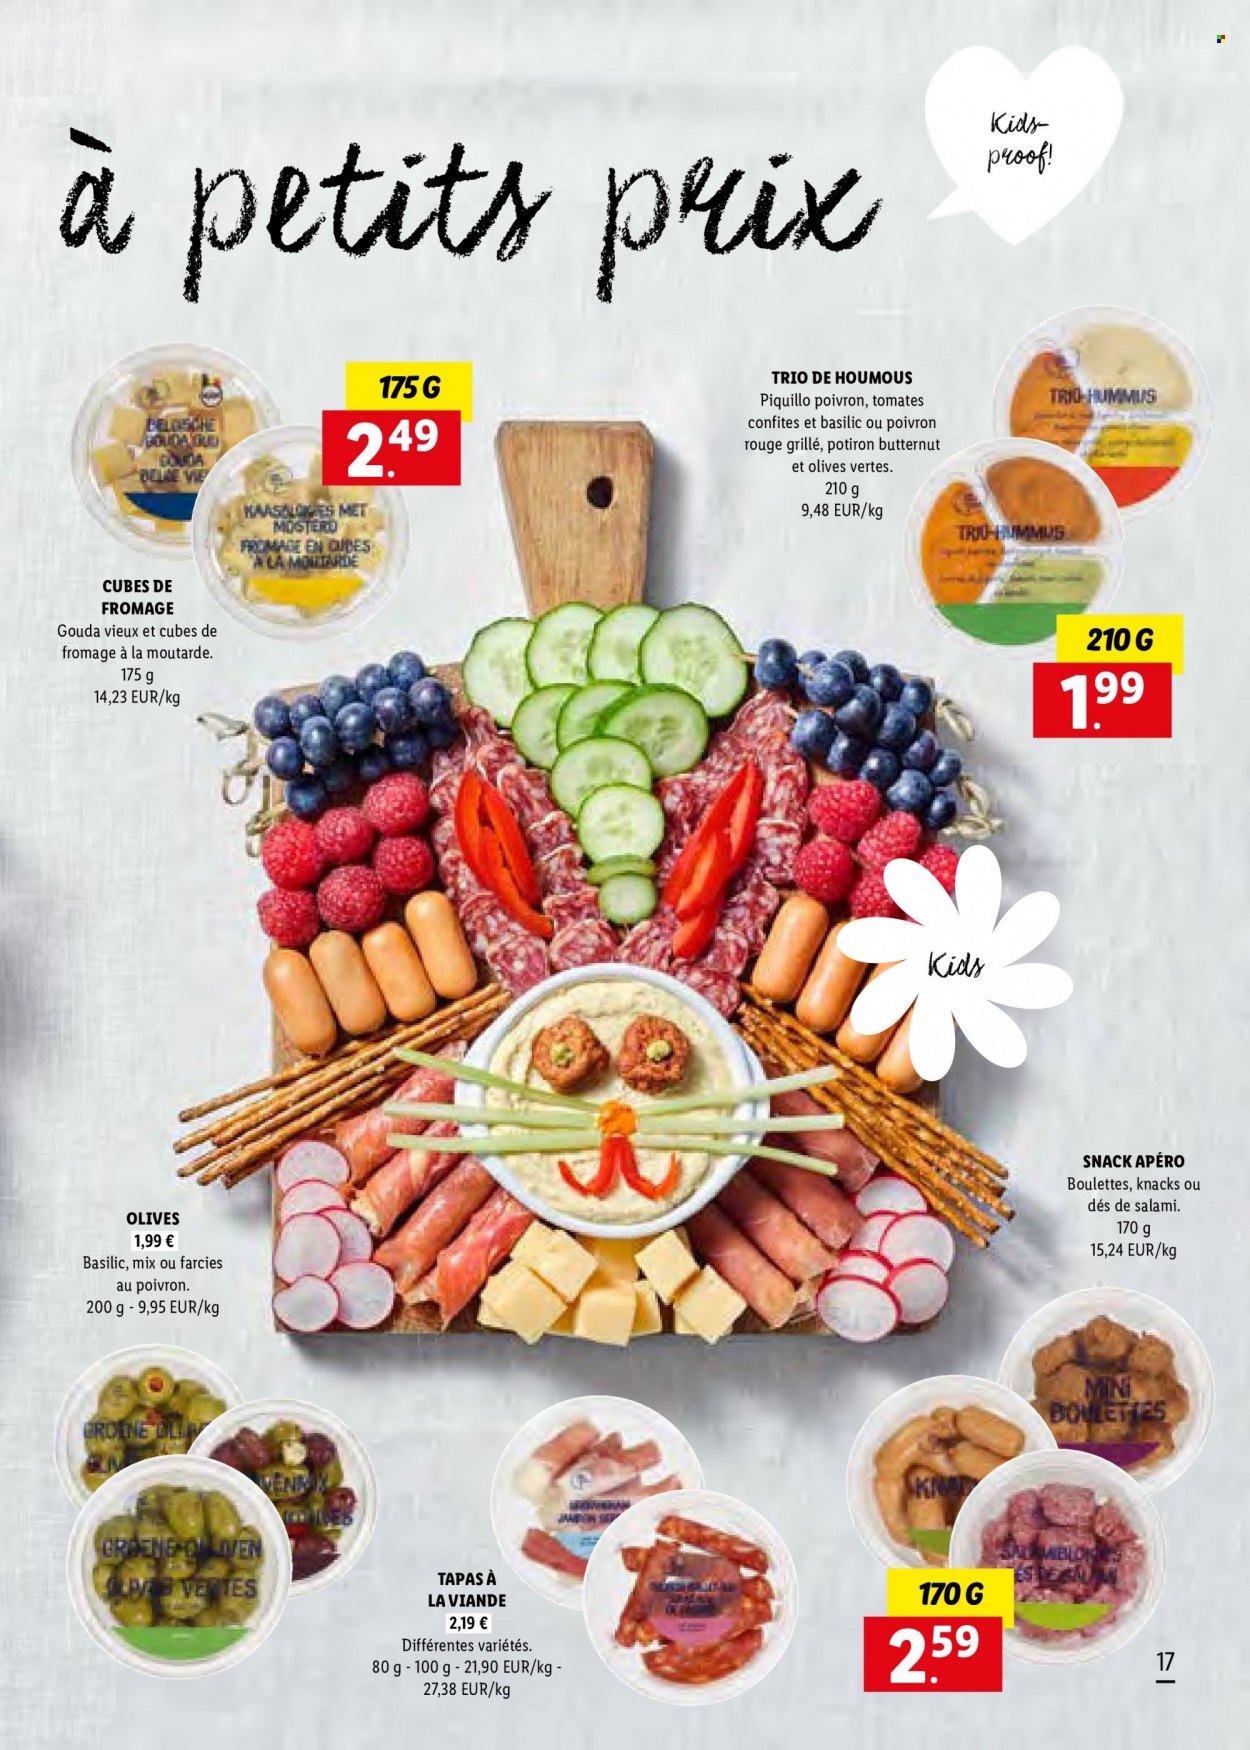 thumbnail - Catalogue Lidl - Produits soldés - viande, potimarron, tapas, salami, Knacks, houmous, olives, olives vertes. Page 17.